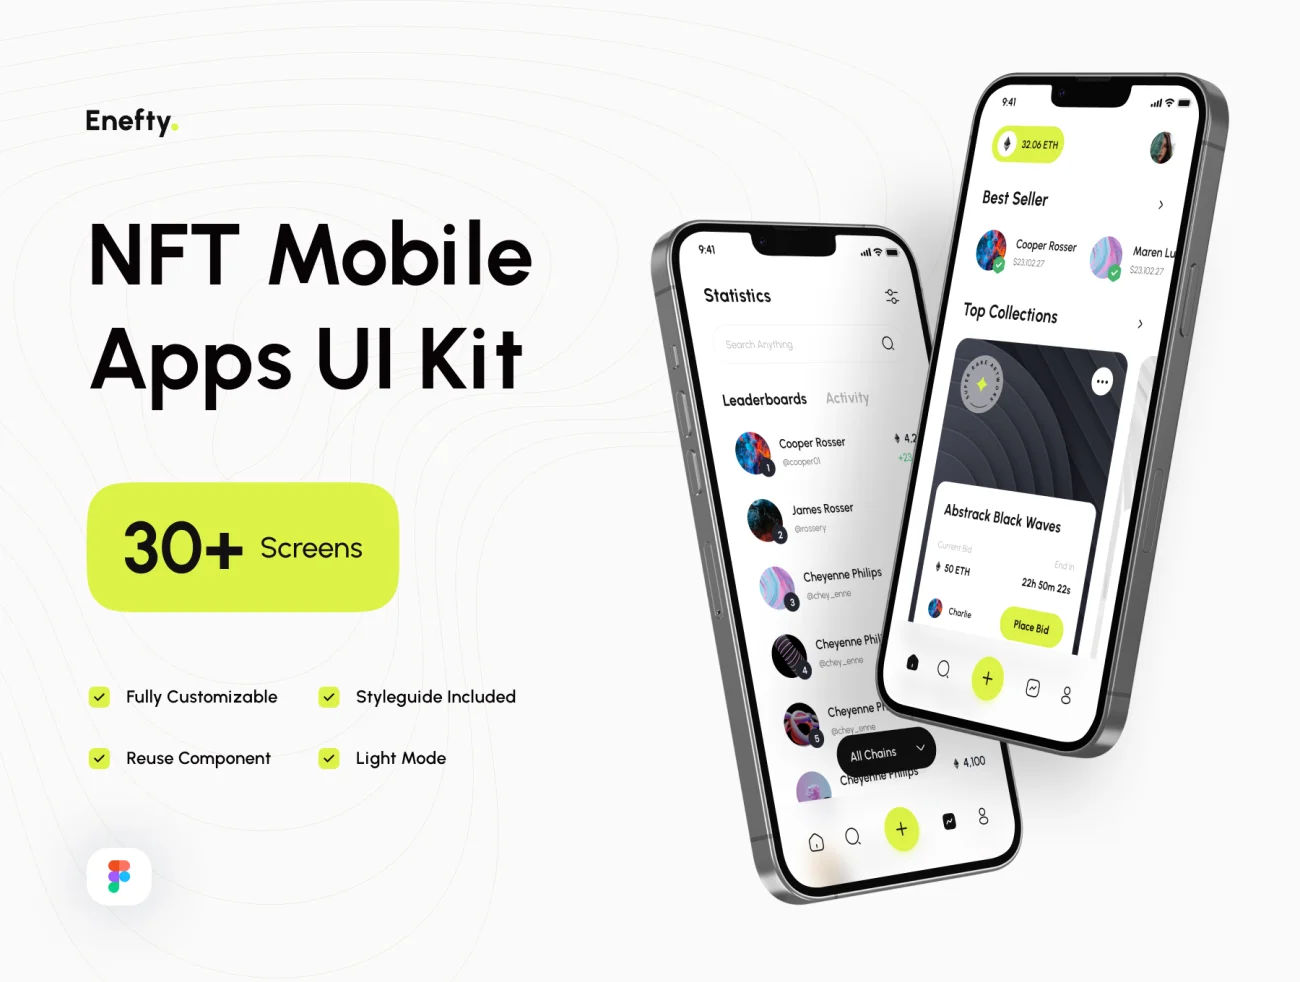 30屏高质量NFT交易平台应用UI设计套件 Enefty - NFT Mobile Apps UI Kit  .figma-UI/UX、ui套件、主页、介绍、付款、卡片式、图表、应用、播放器、注册、电子钱包、网购、聊天、详情-到位啦UI